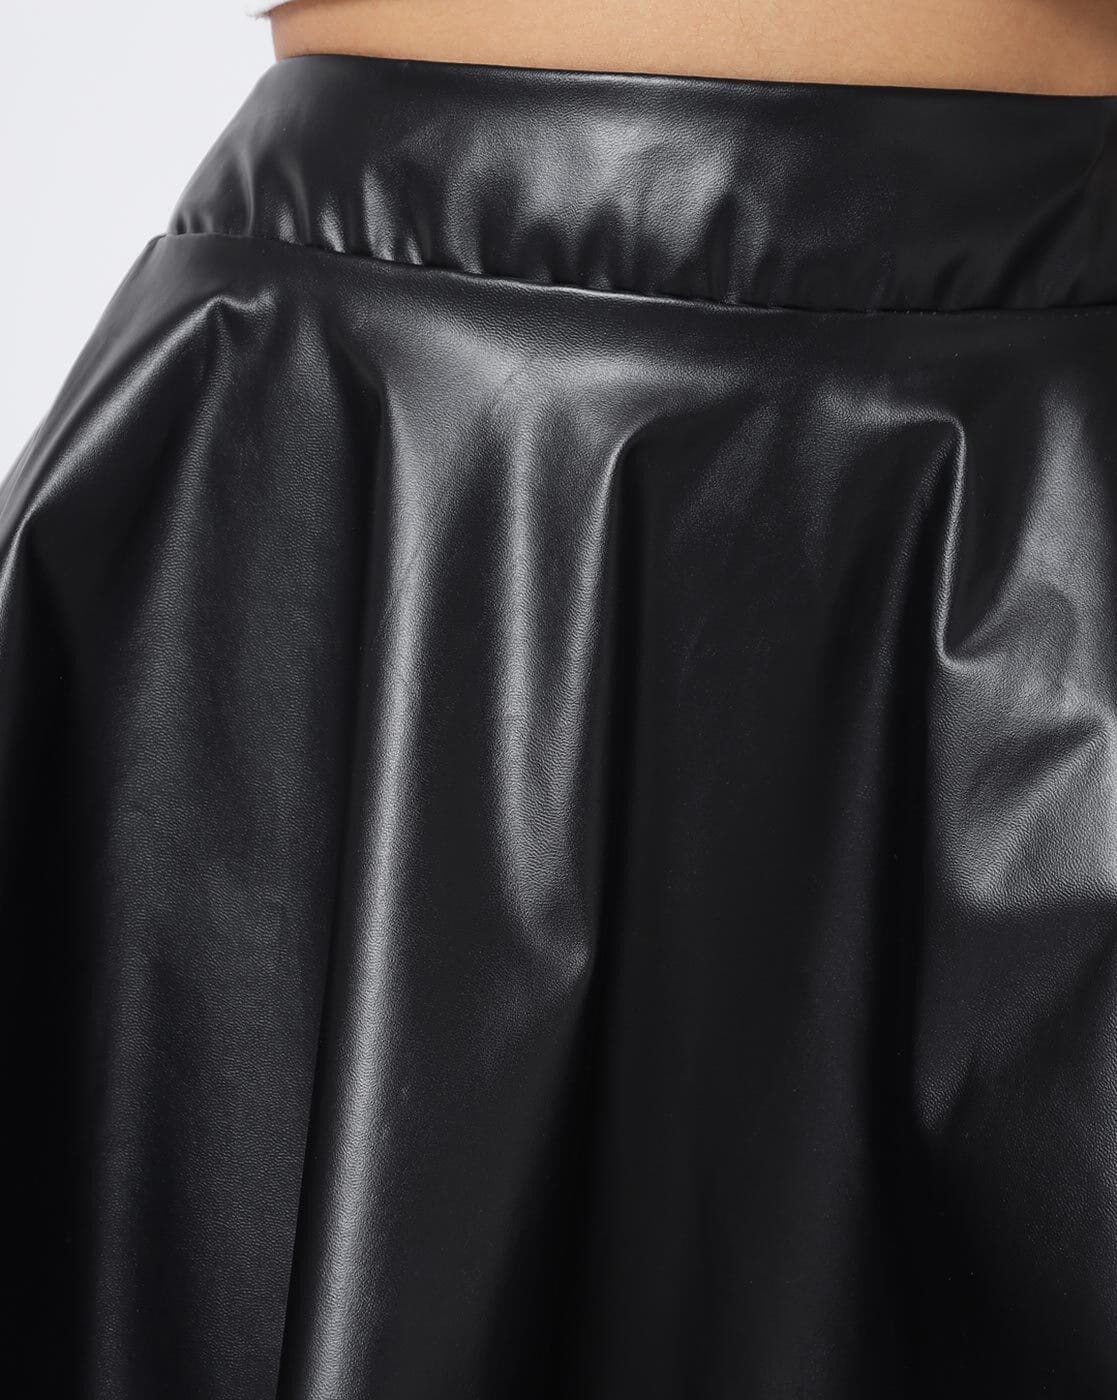 Cute Black Skirt - Skater Skirt - Vegan Leather Skirt - $55.00 - Lulus